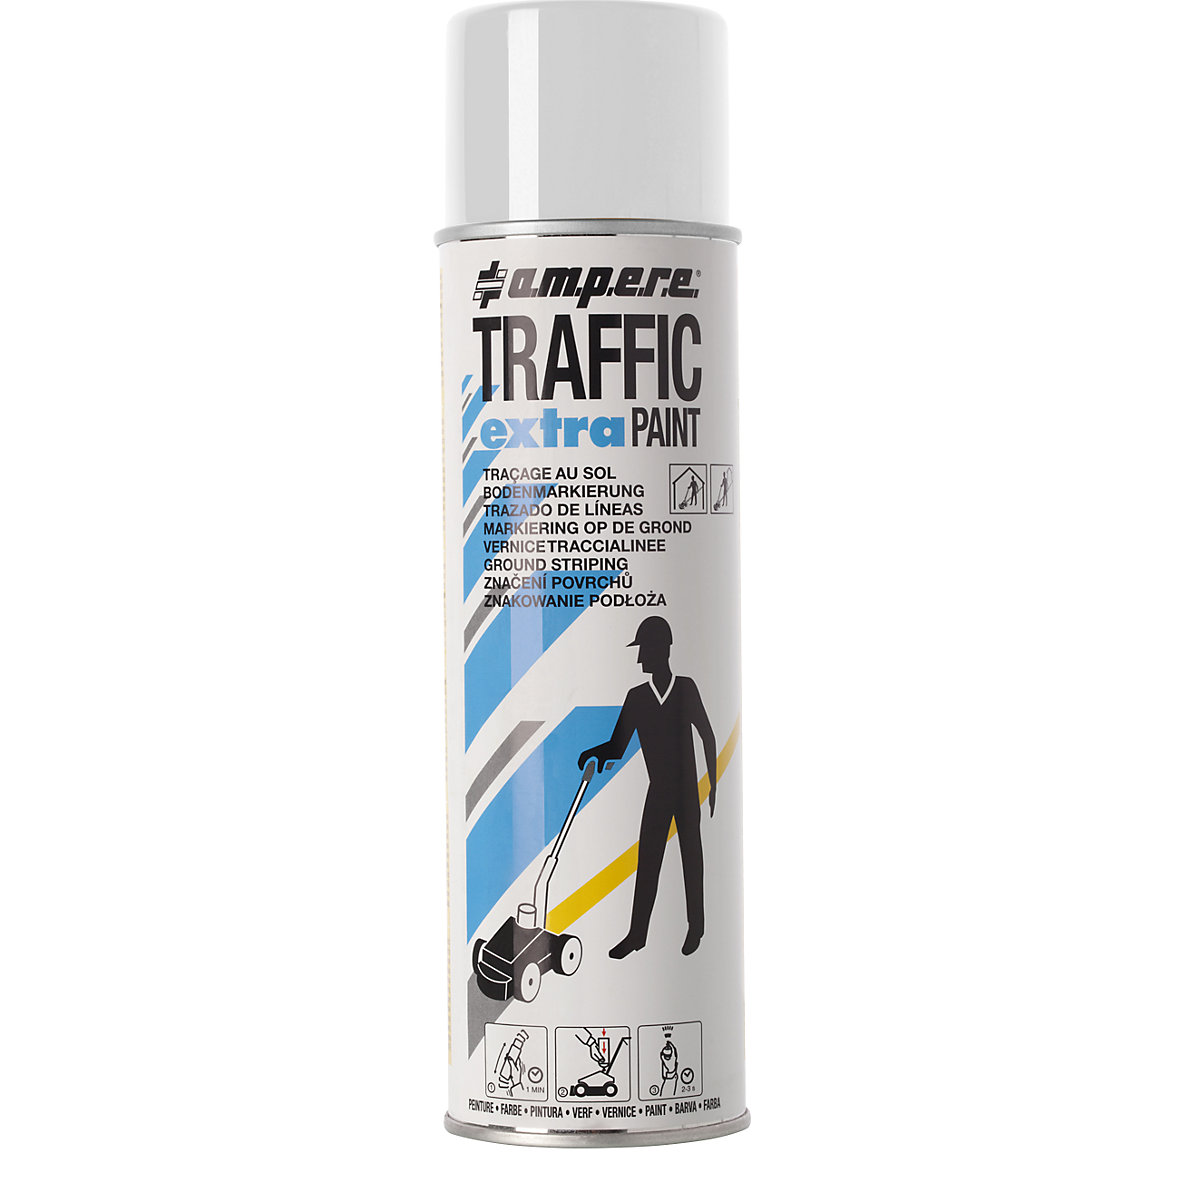 Markeerverf Traffic extra Paint® voor intensief gebruik – Ampere